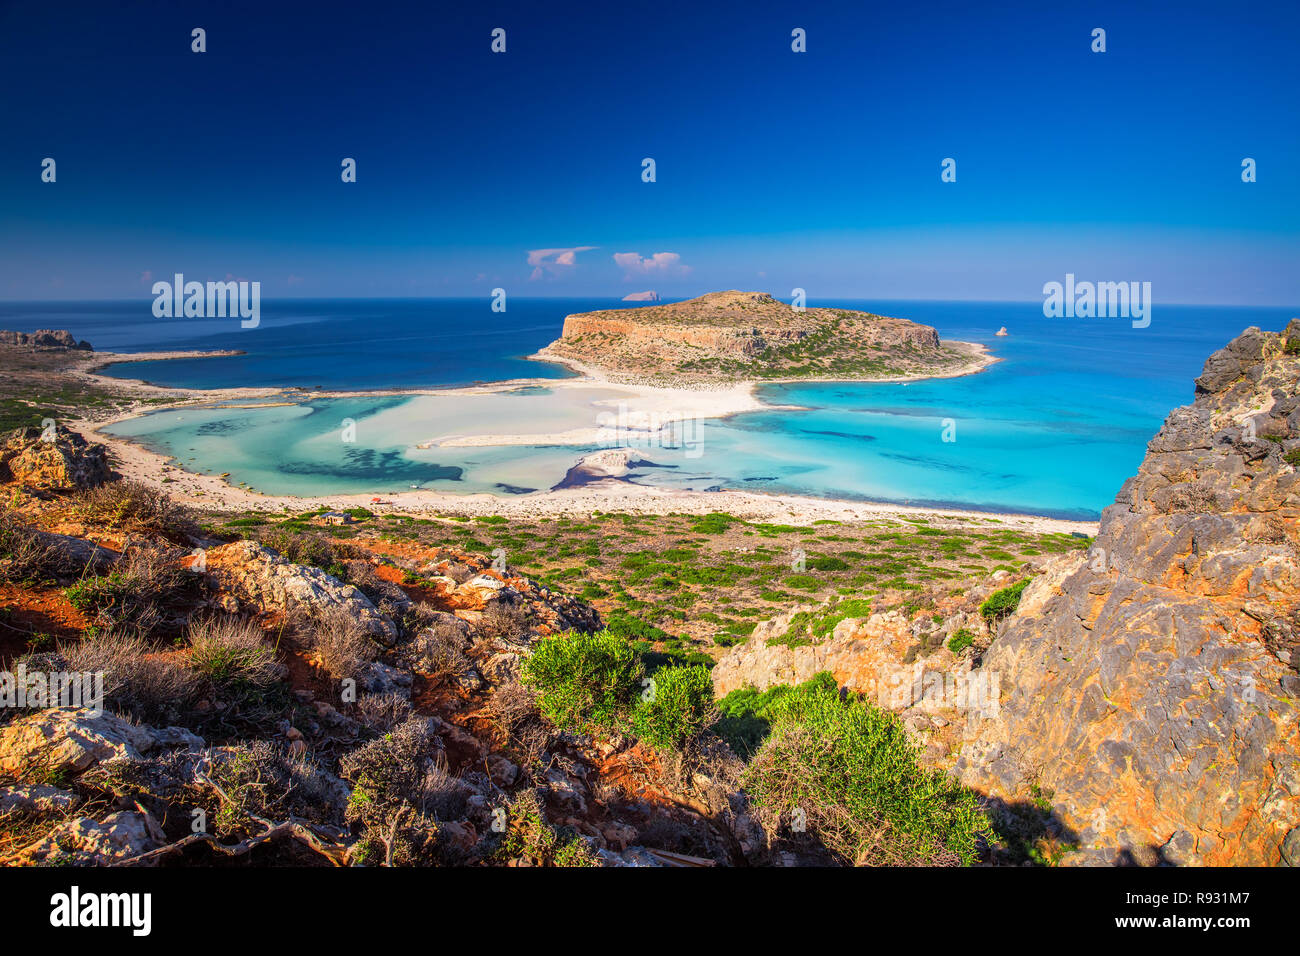 Balos Lagune auf der Insel Kreta mit azurblauen Wasser, Griechenland, Europa. Kreta ist die größte und bevölkerungsreichste der griechischen Inseln. Stockfoto